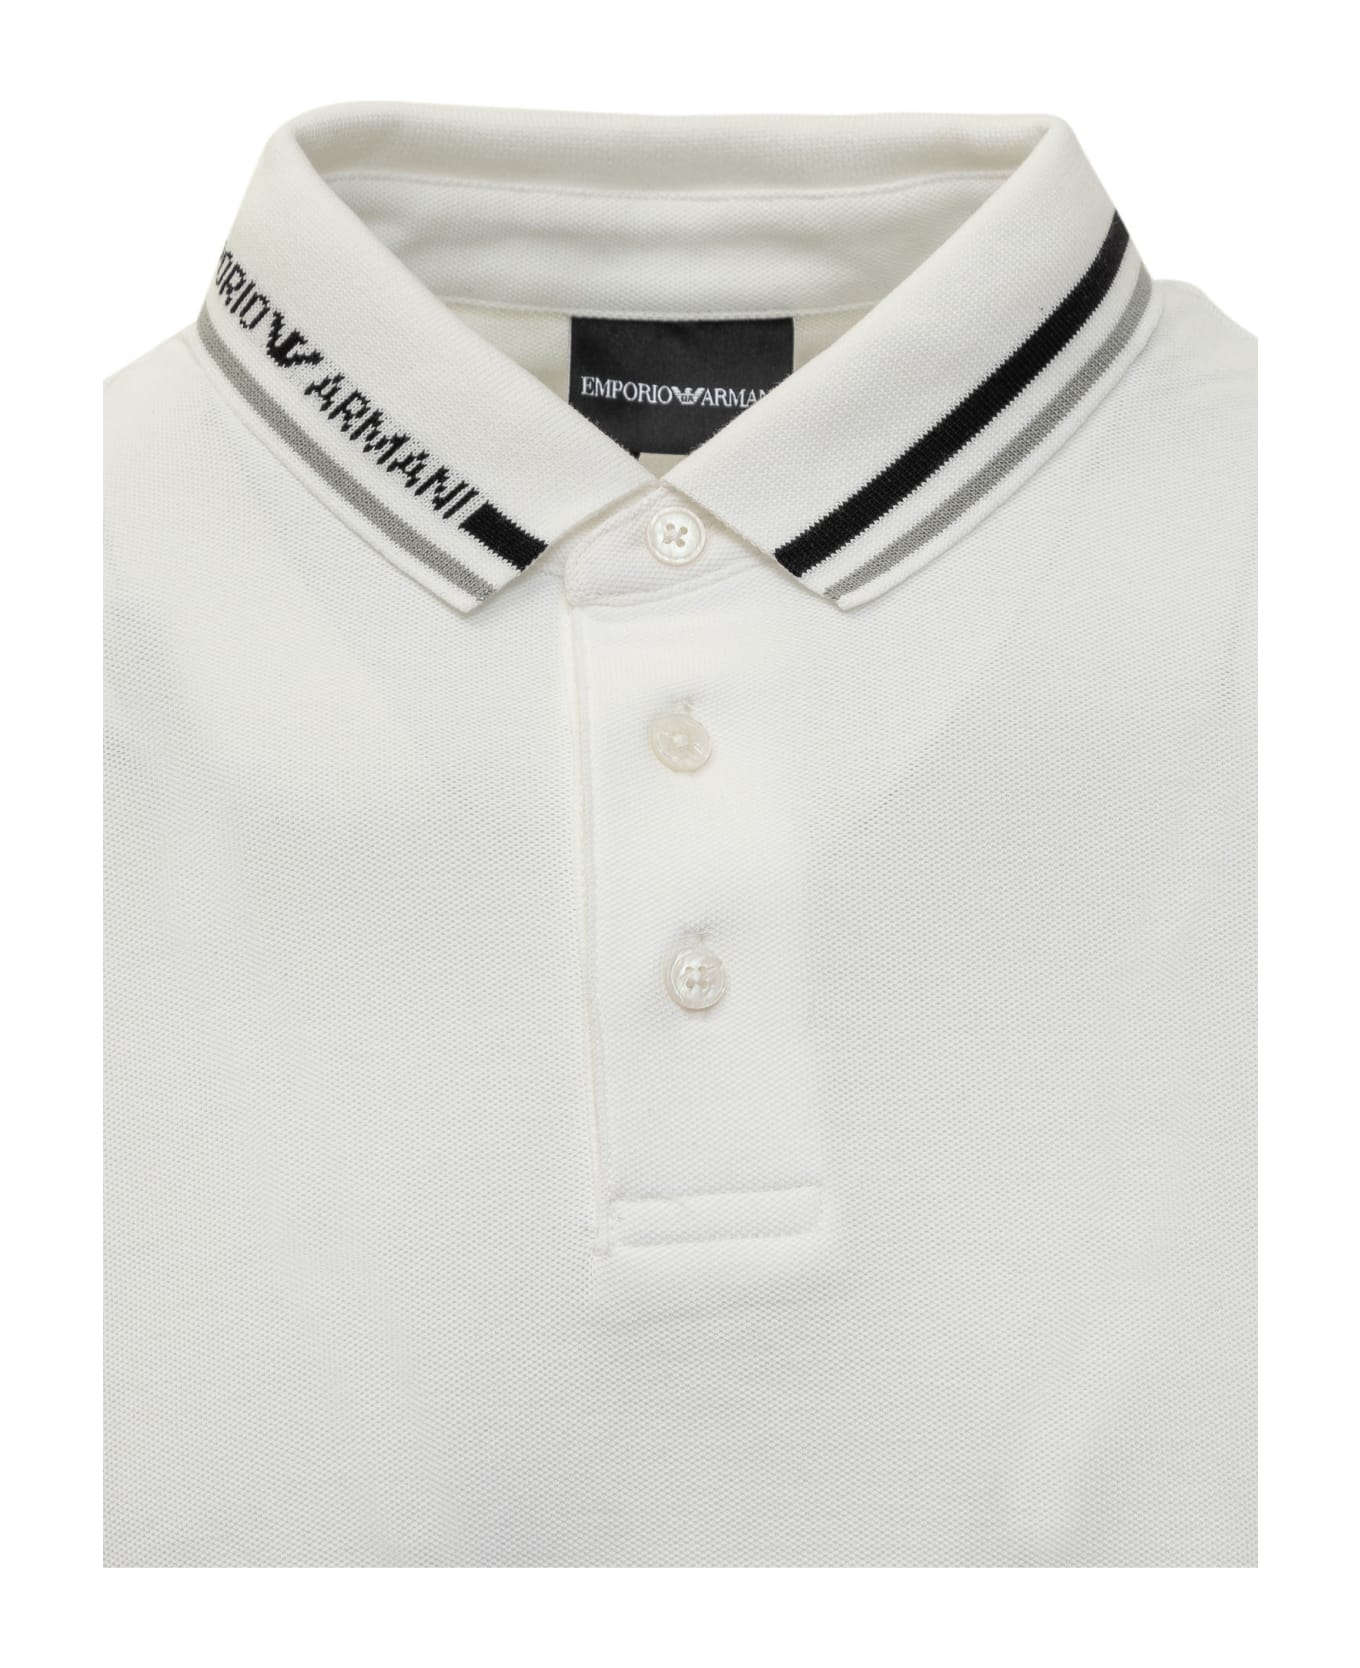 Emporio Armani Polo Shirt With Logo - White